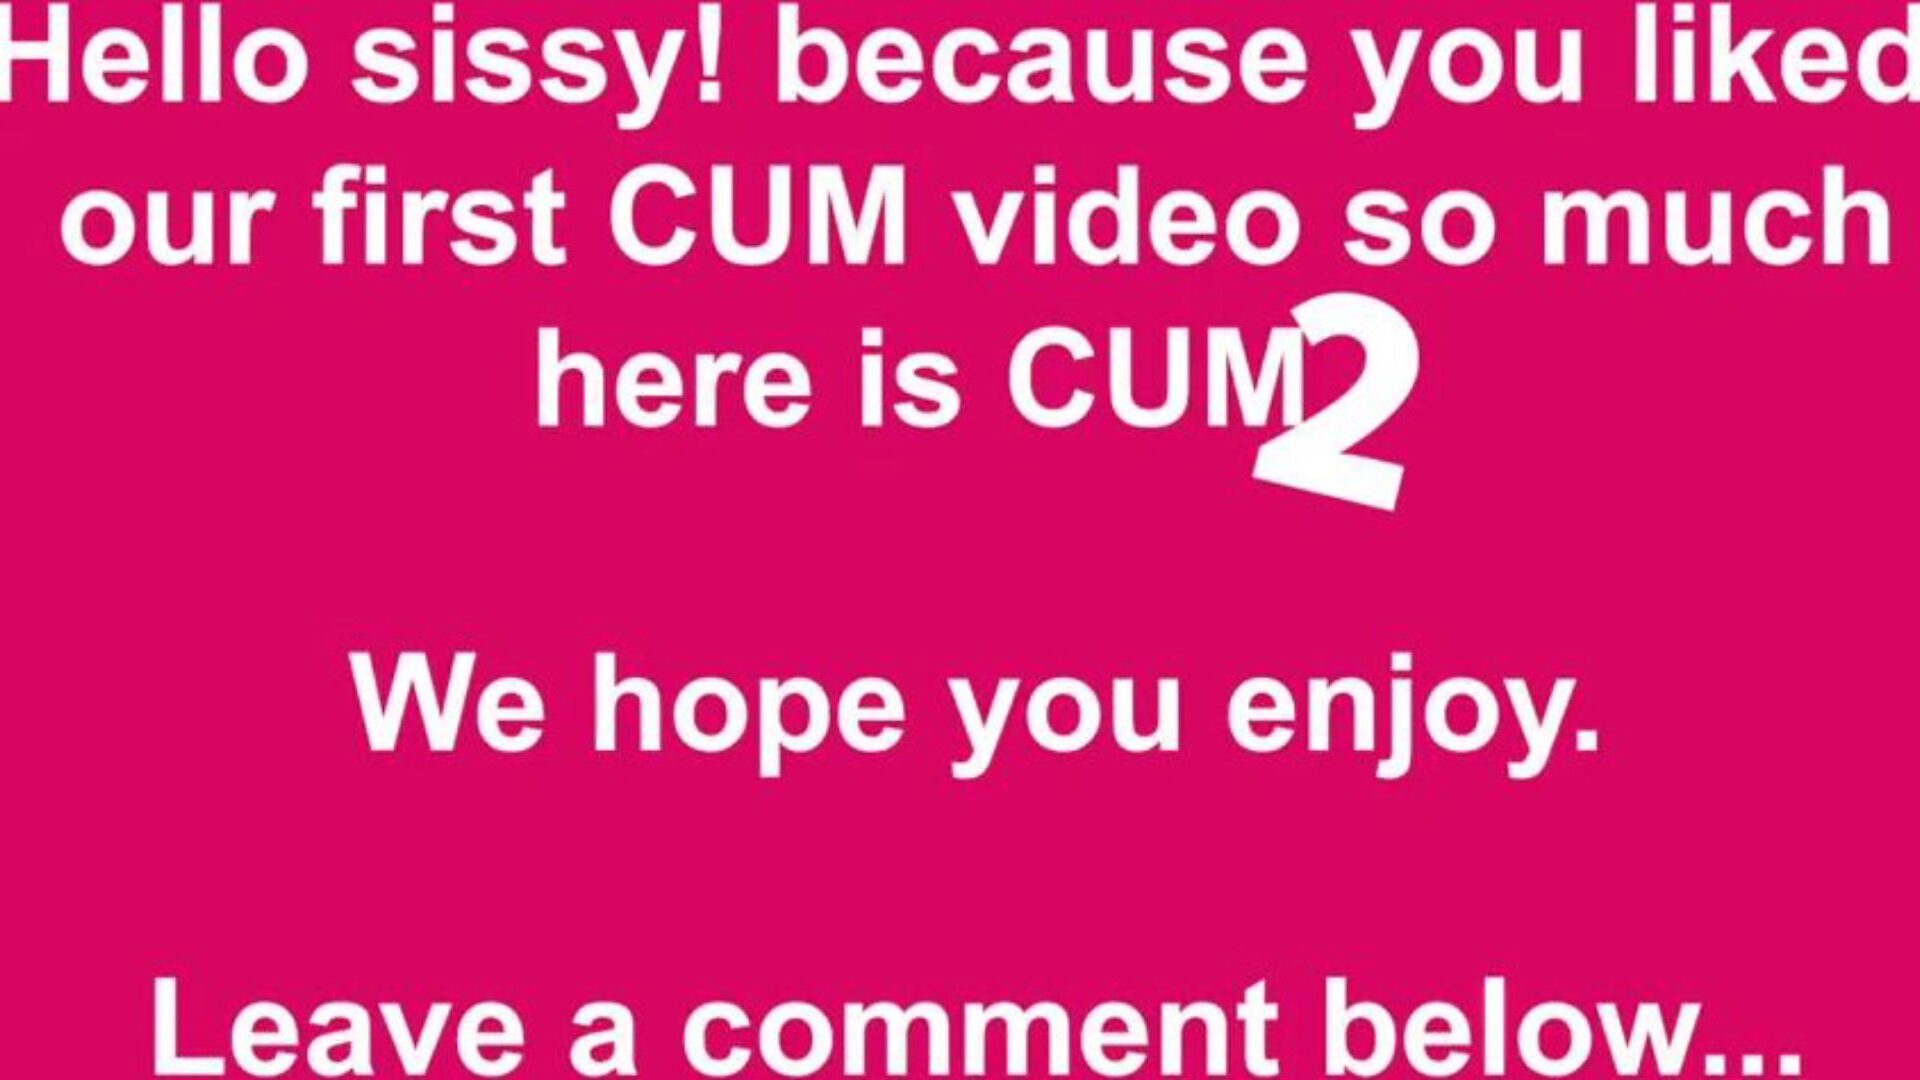 cum 2 free cum & cumming tube porn video 49 - xhamster oglądaj odcinek z cum 2 tube hook-up za darmo na xhamster, z dominującym zestawem darmowych wytrysków tube & tube dwa odcinki porno HD